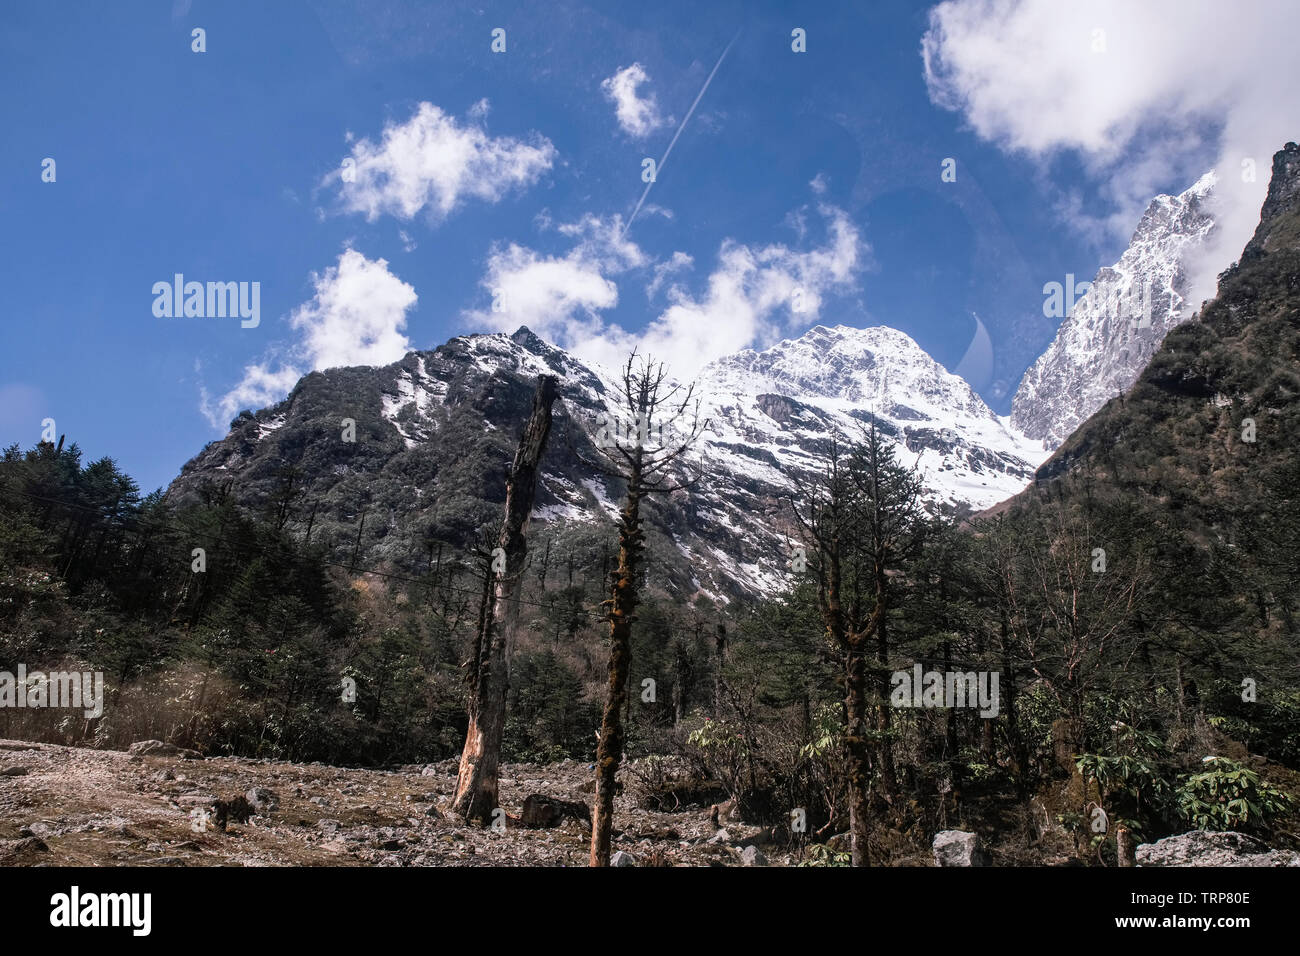 Dommages écologiques ,,sur ,l'environnement,arbres,actuellement,figurant,dans Yungtham,vallée,,,par les fortes chutes de neige,bord,avalanche,le nord du Sikkim, Inde. Banque D'Images